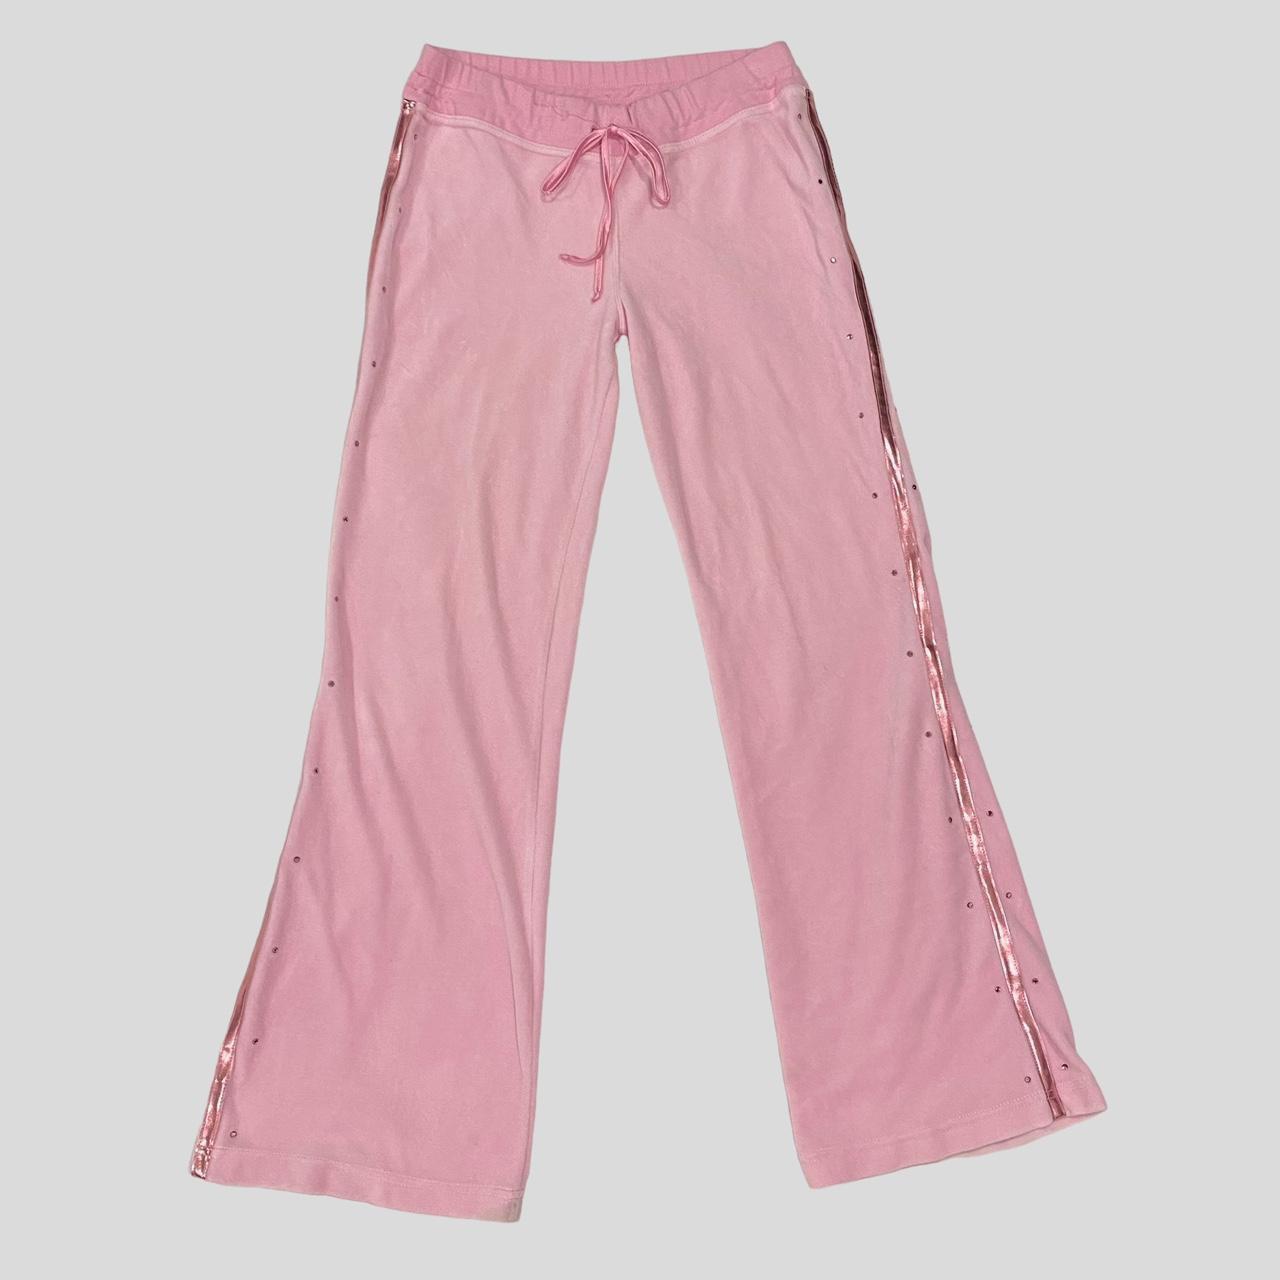 Love pink y2k pink flare leggings 💗depop payments - Depop